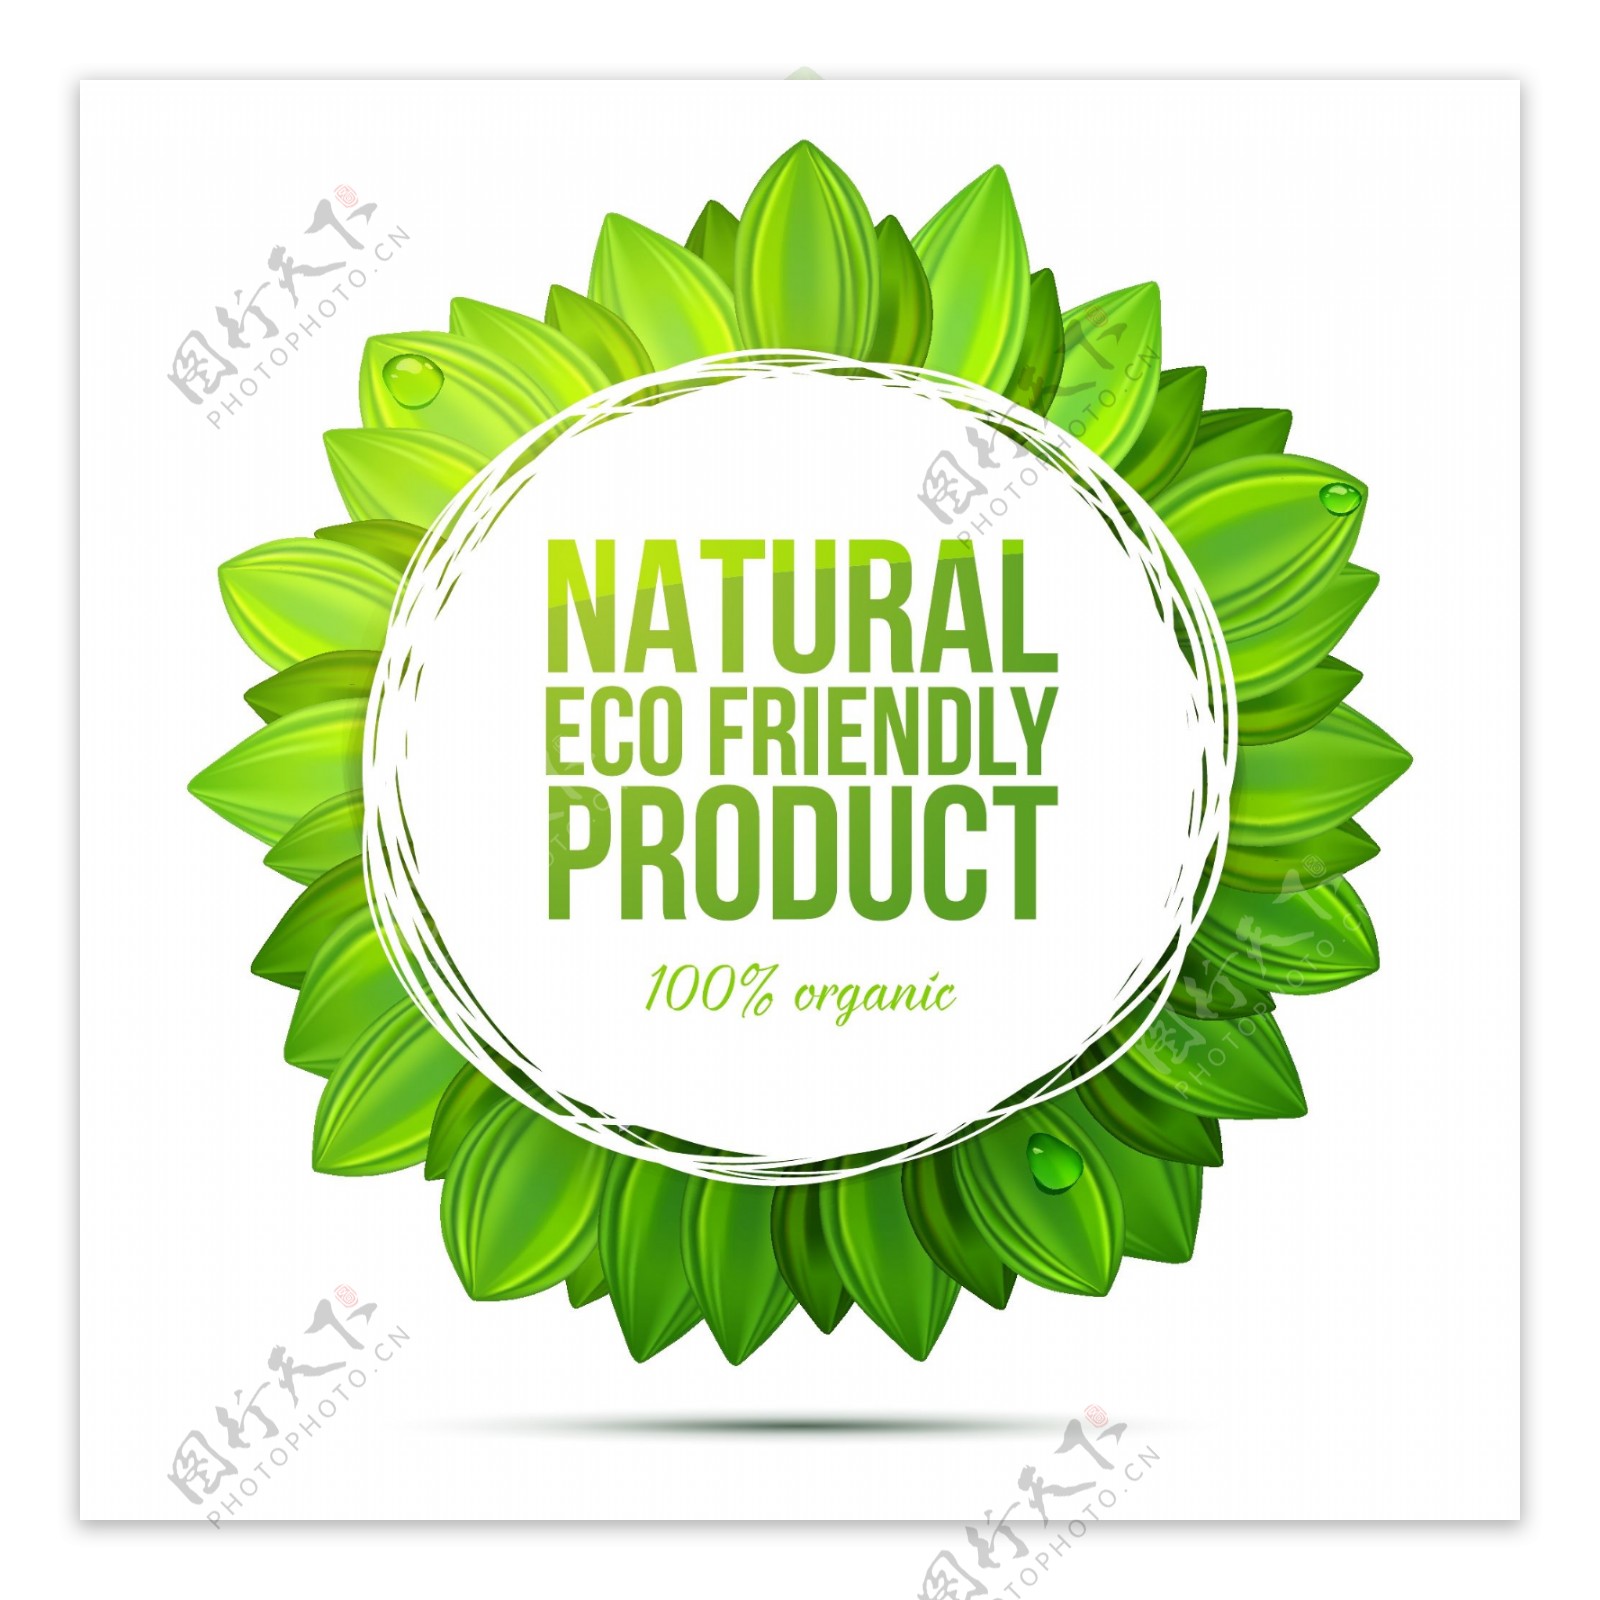 天然环保产品标签矢量素材